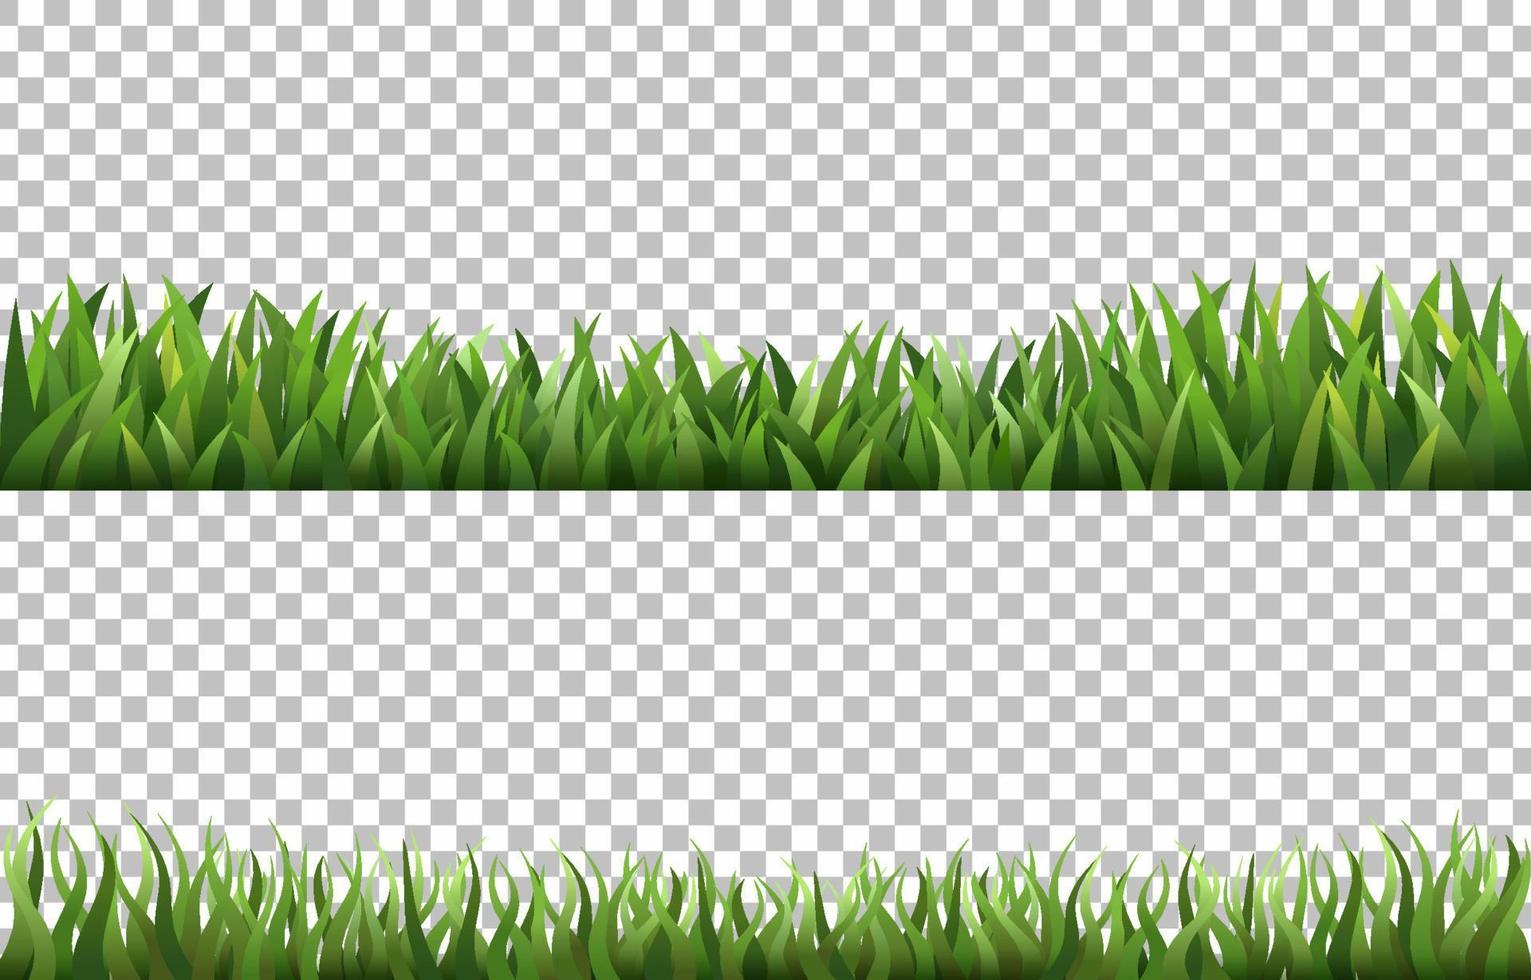 satz transparenter hintergrund des grünen grases vektor